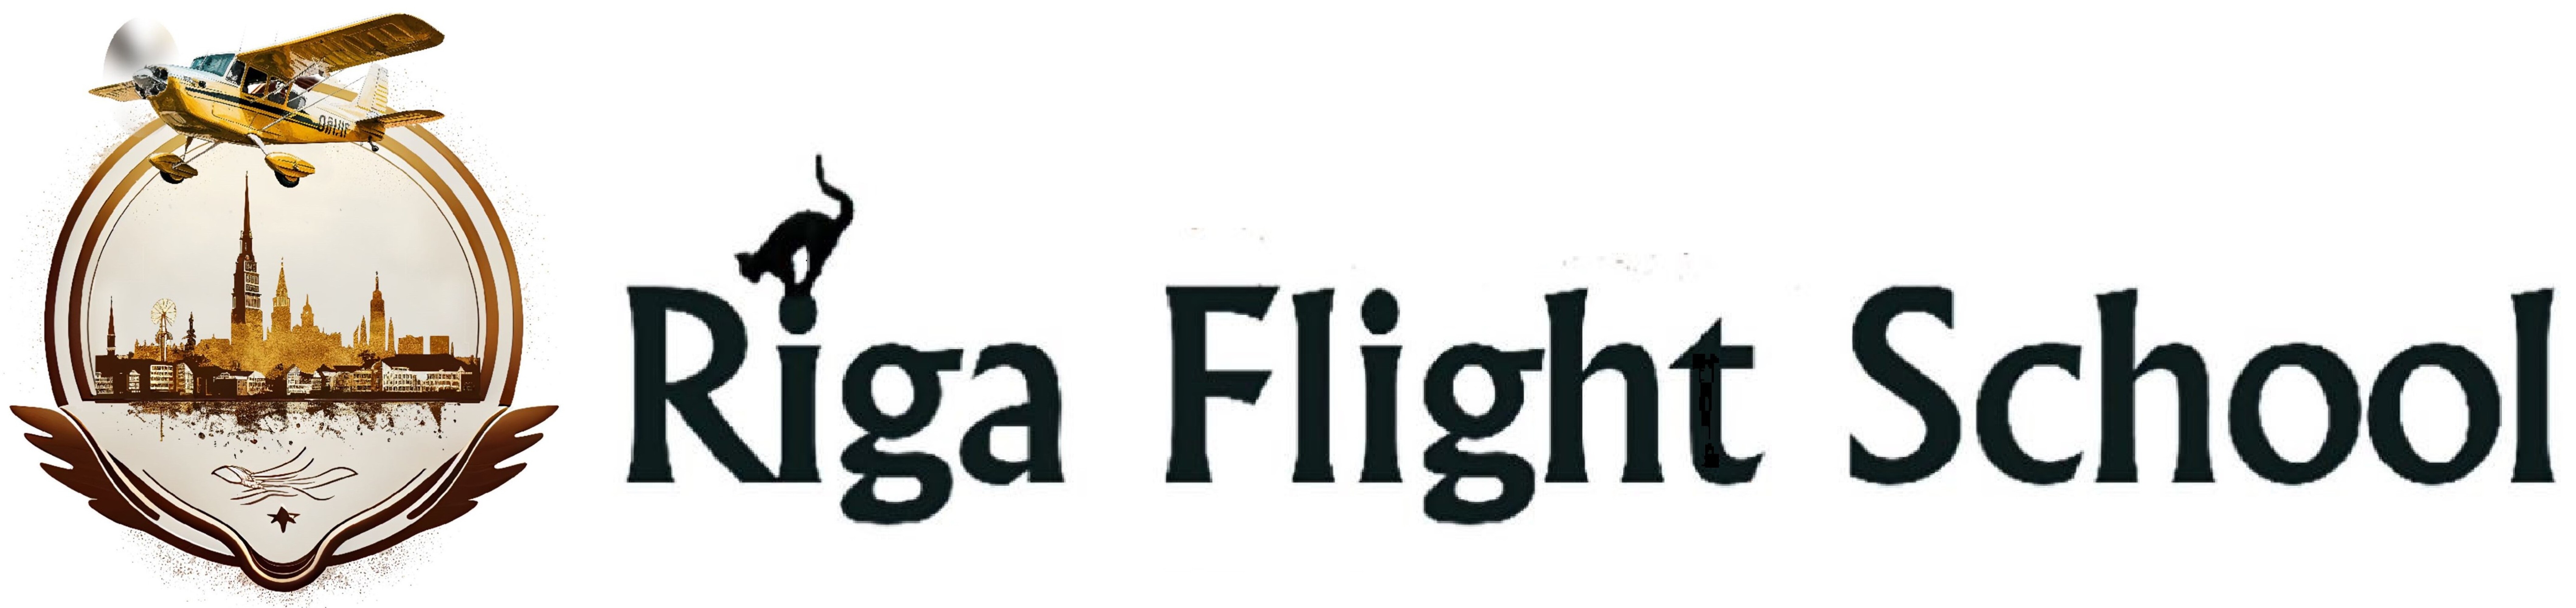 Riga Flight School logo